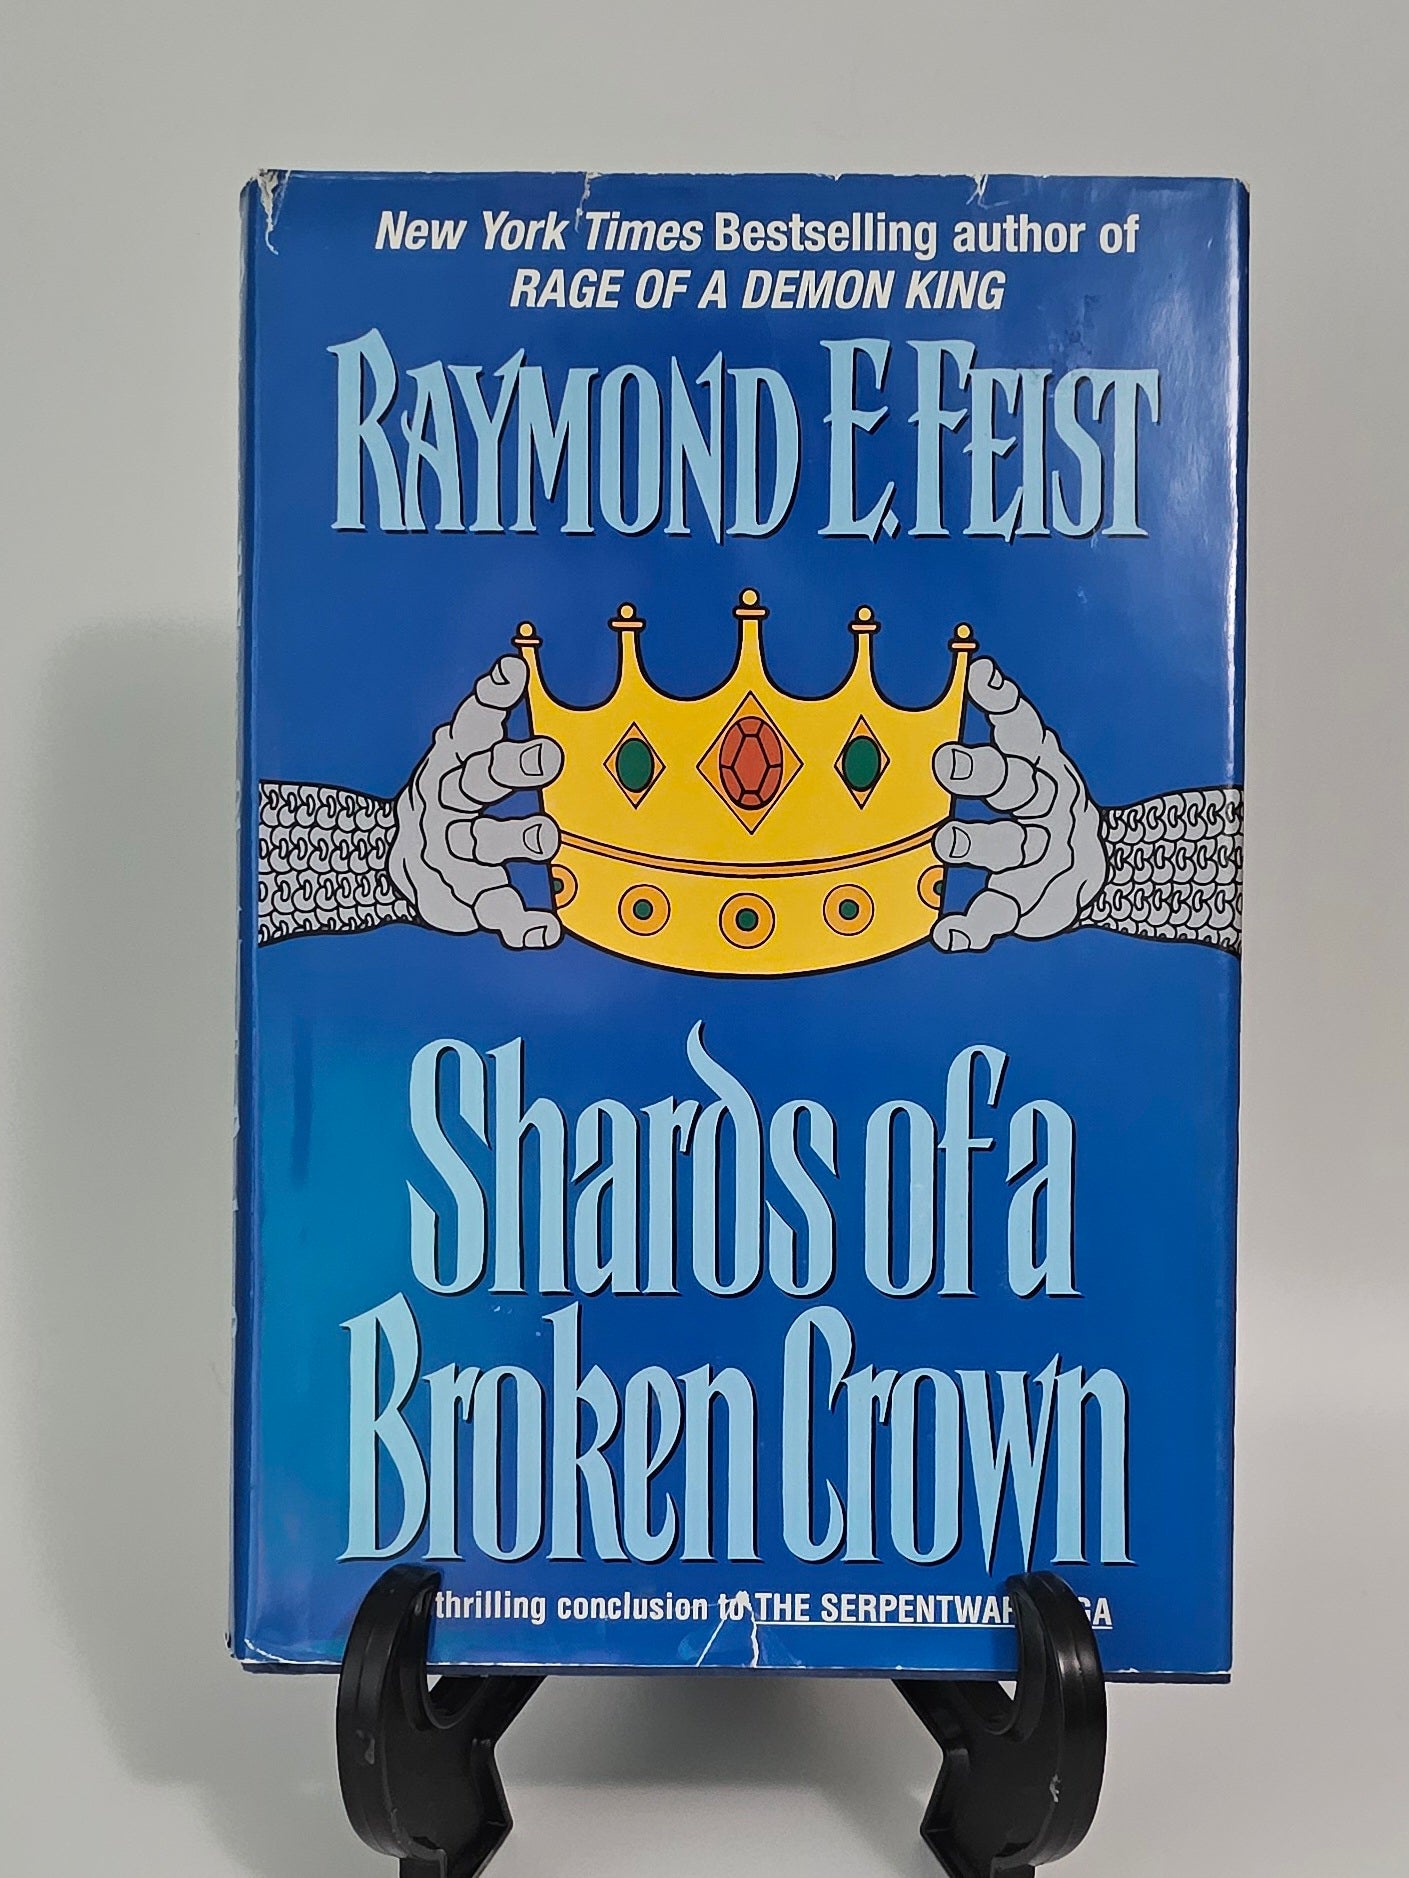 Shards of a Broken Crown by Raymond E. Feist (The Serpentwar Saga #4)